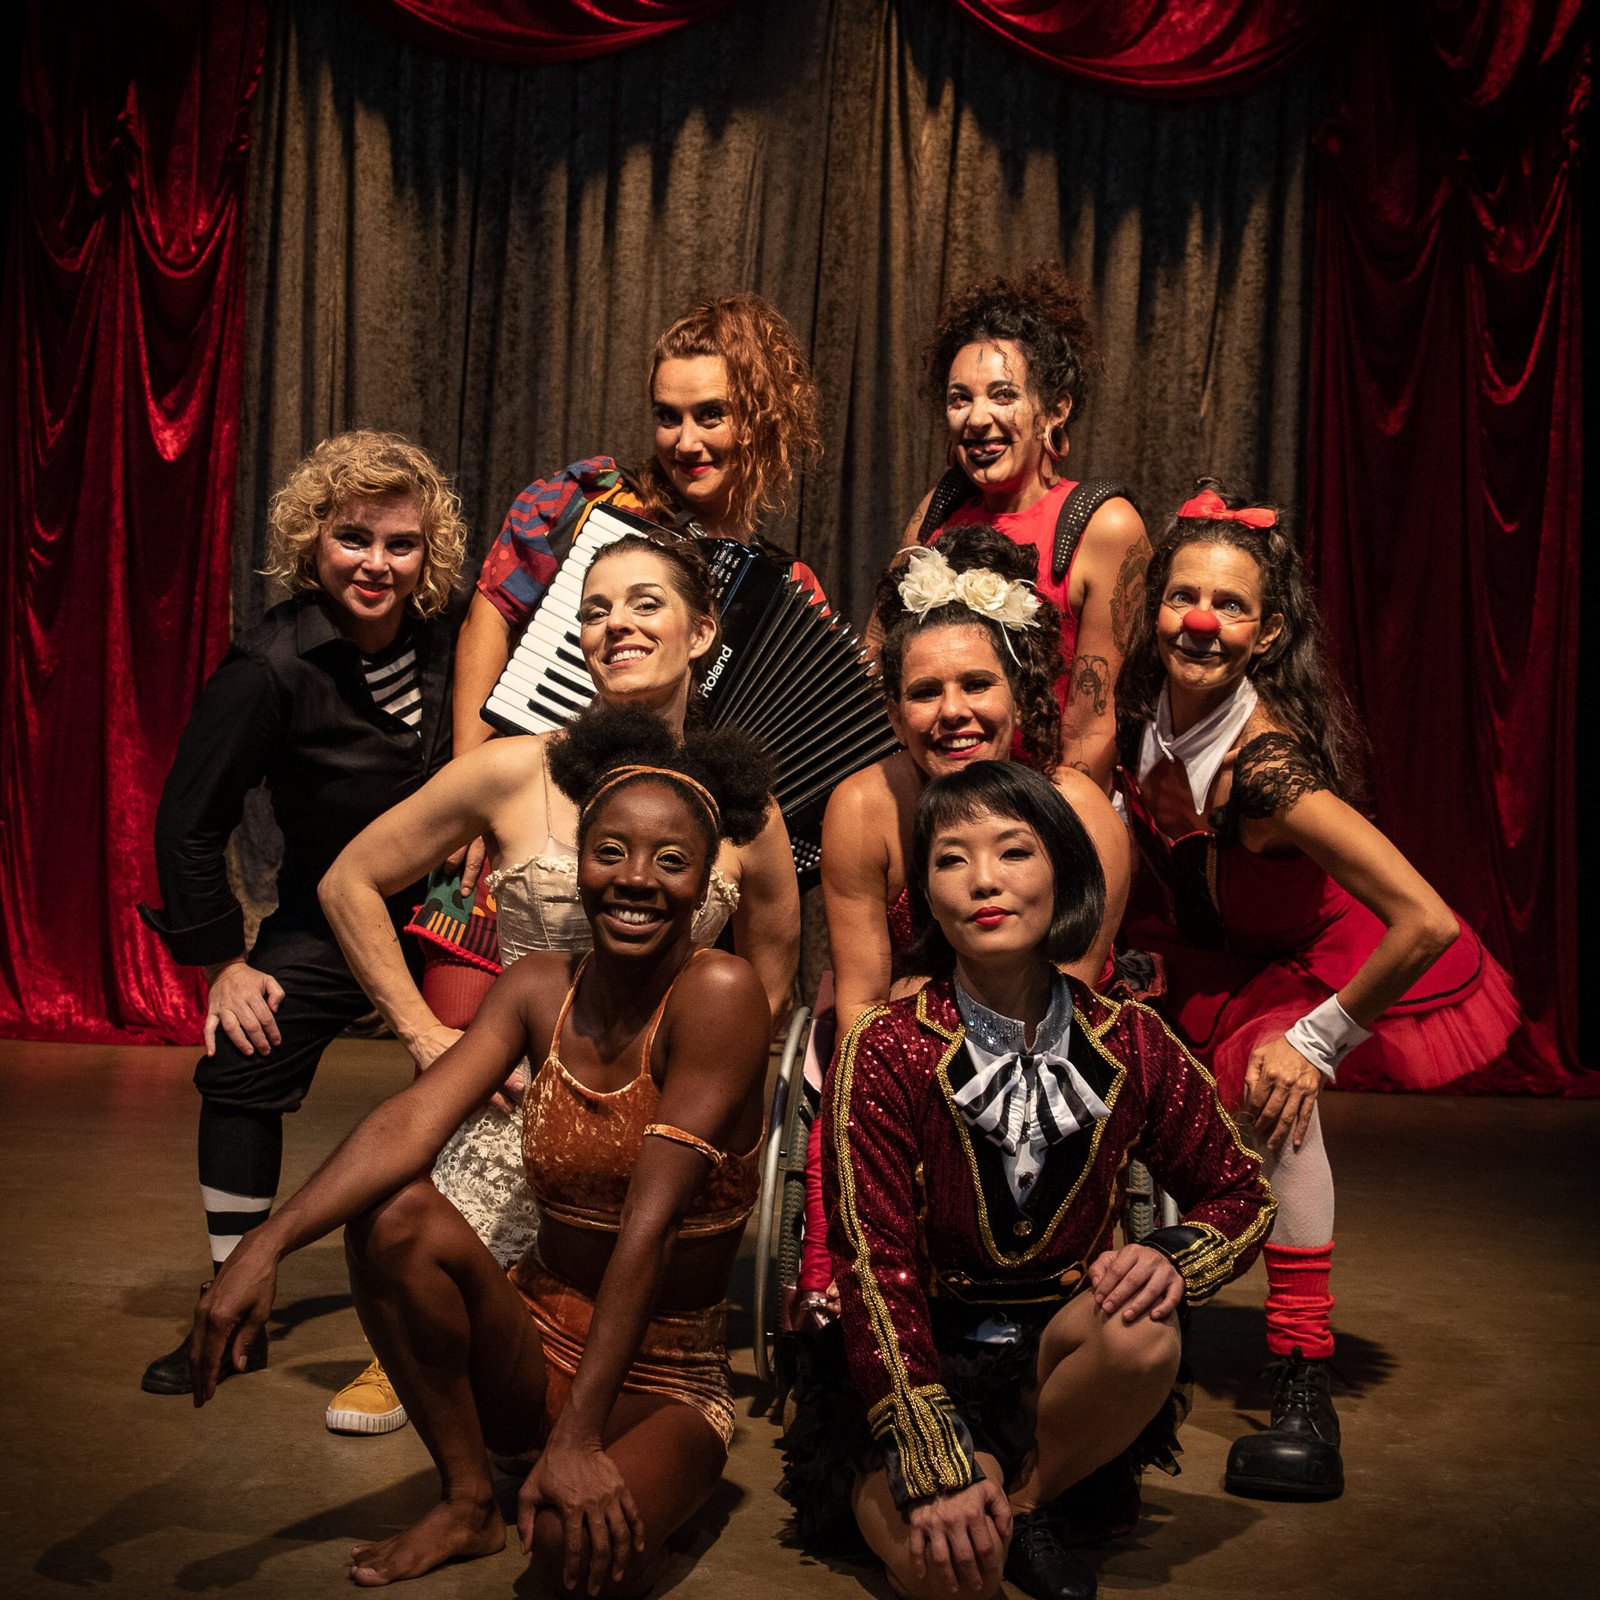 “Humanas-Cabaré”: Mulheres unem teatro e circo neste sábado, 29, em Caieiras